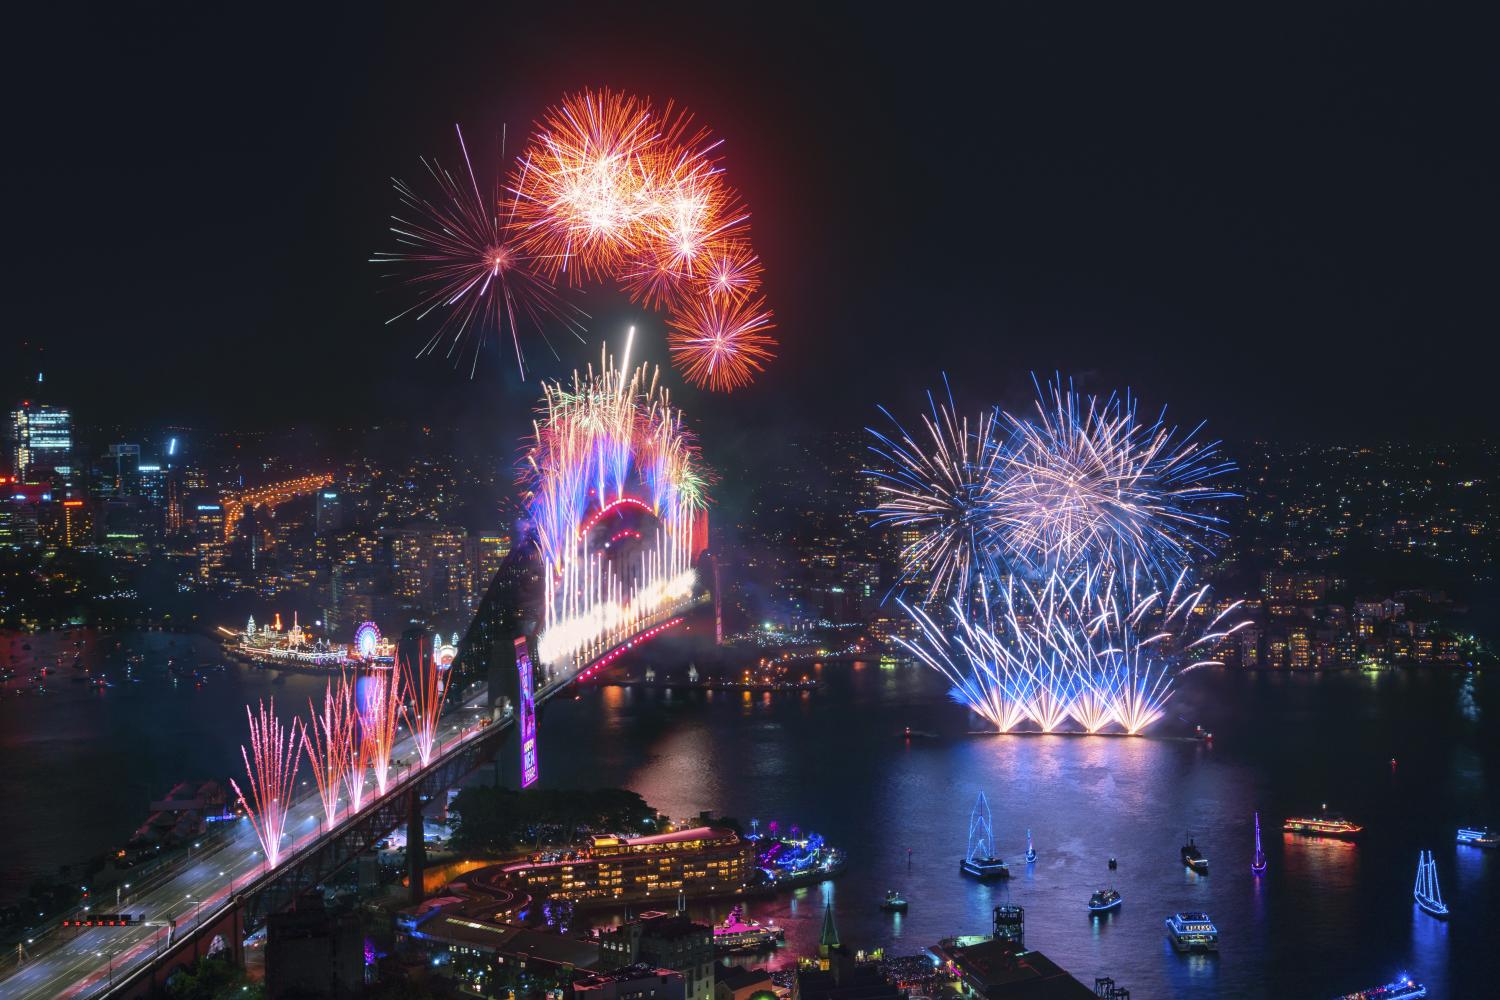 壯觀的午夜煙花匯演遍布雪梨海港在慶祝新的一年的開始2020